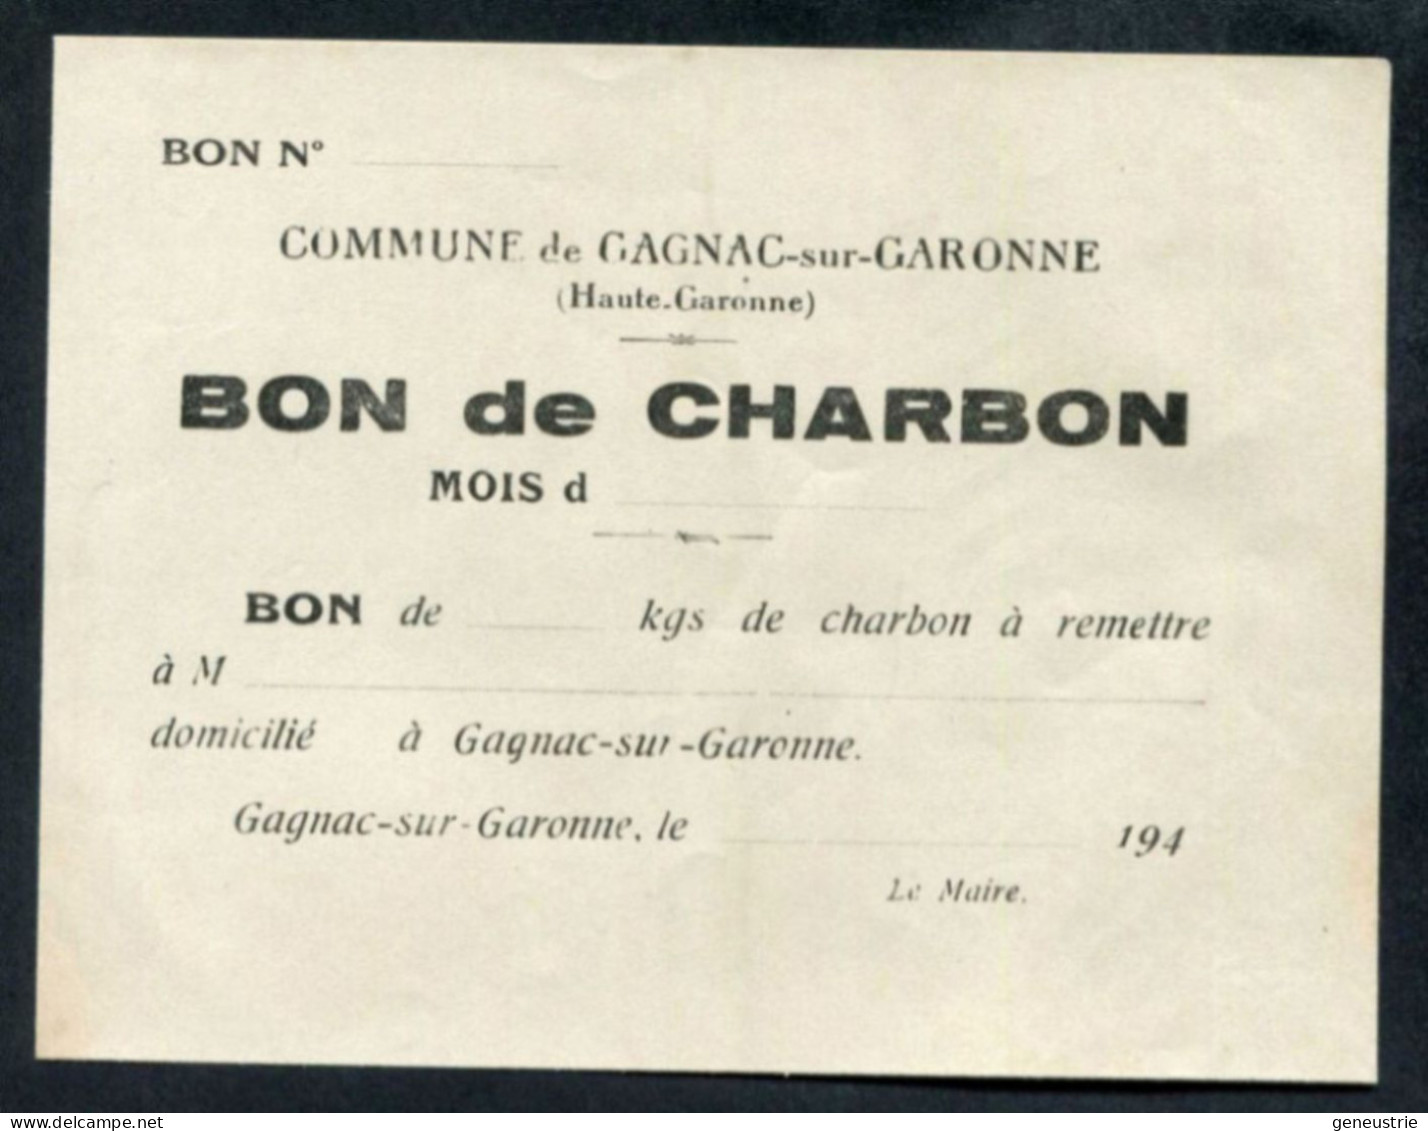 WW2 Billet De Nécessité "Bon De ... Kg De Charbon - Gagnac-sur-Garonne (Toulouse) Années 40" WWII - Bonds & Basic Needs